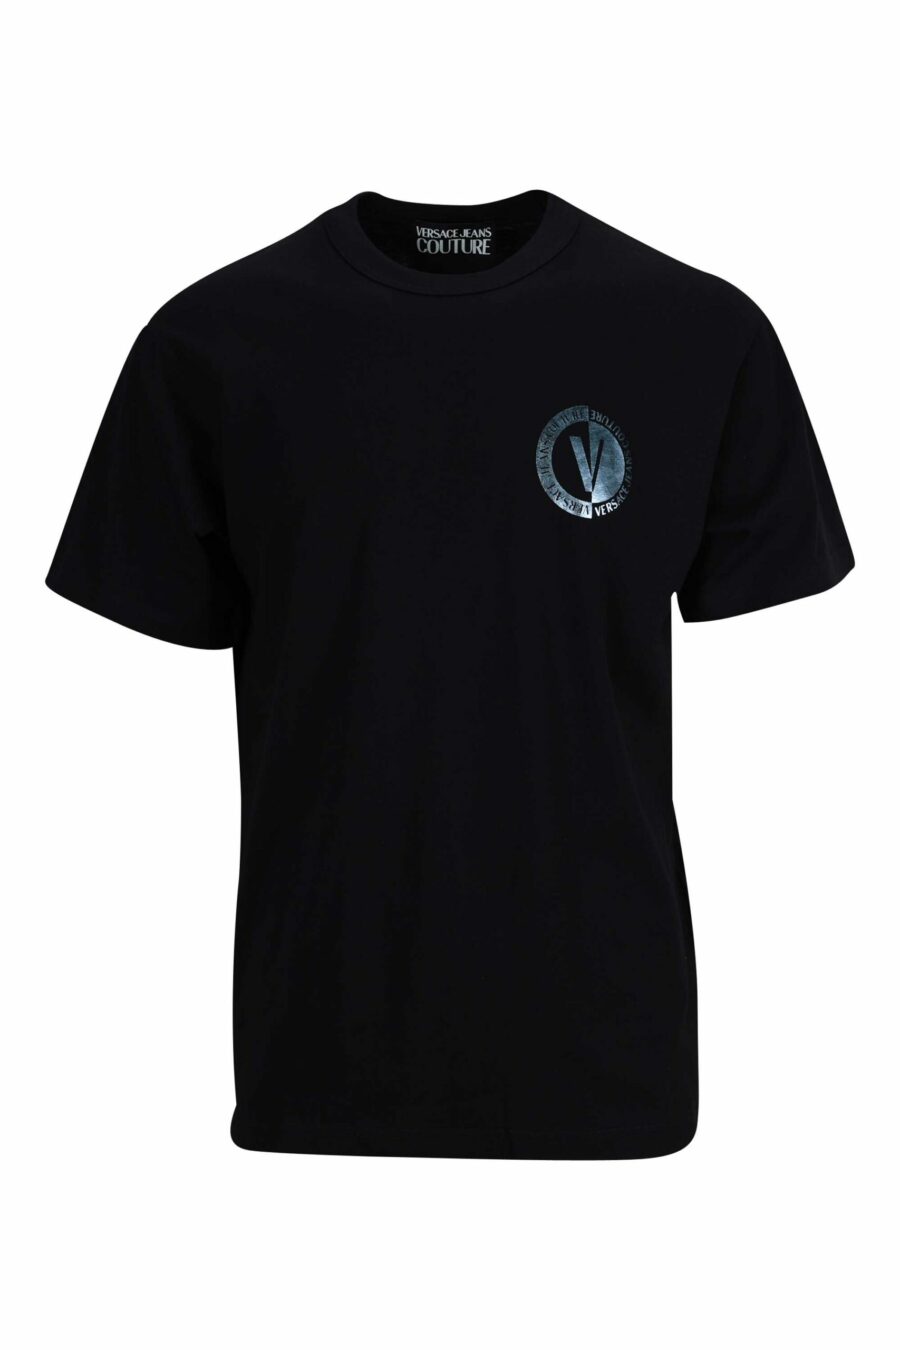 Schwarzes T-Shirt mit metallisch blauem, kreisförmigem Mini-Logo - 8052019402216 skaliert